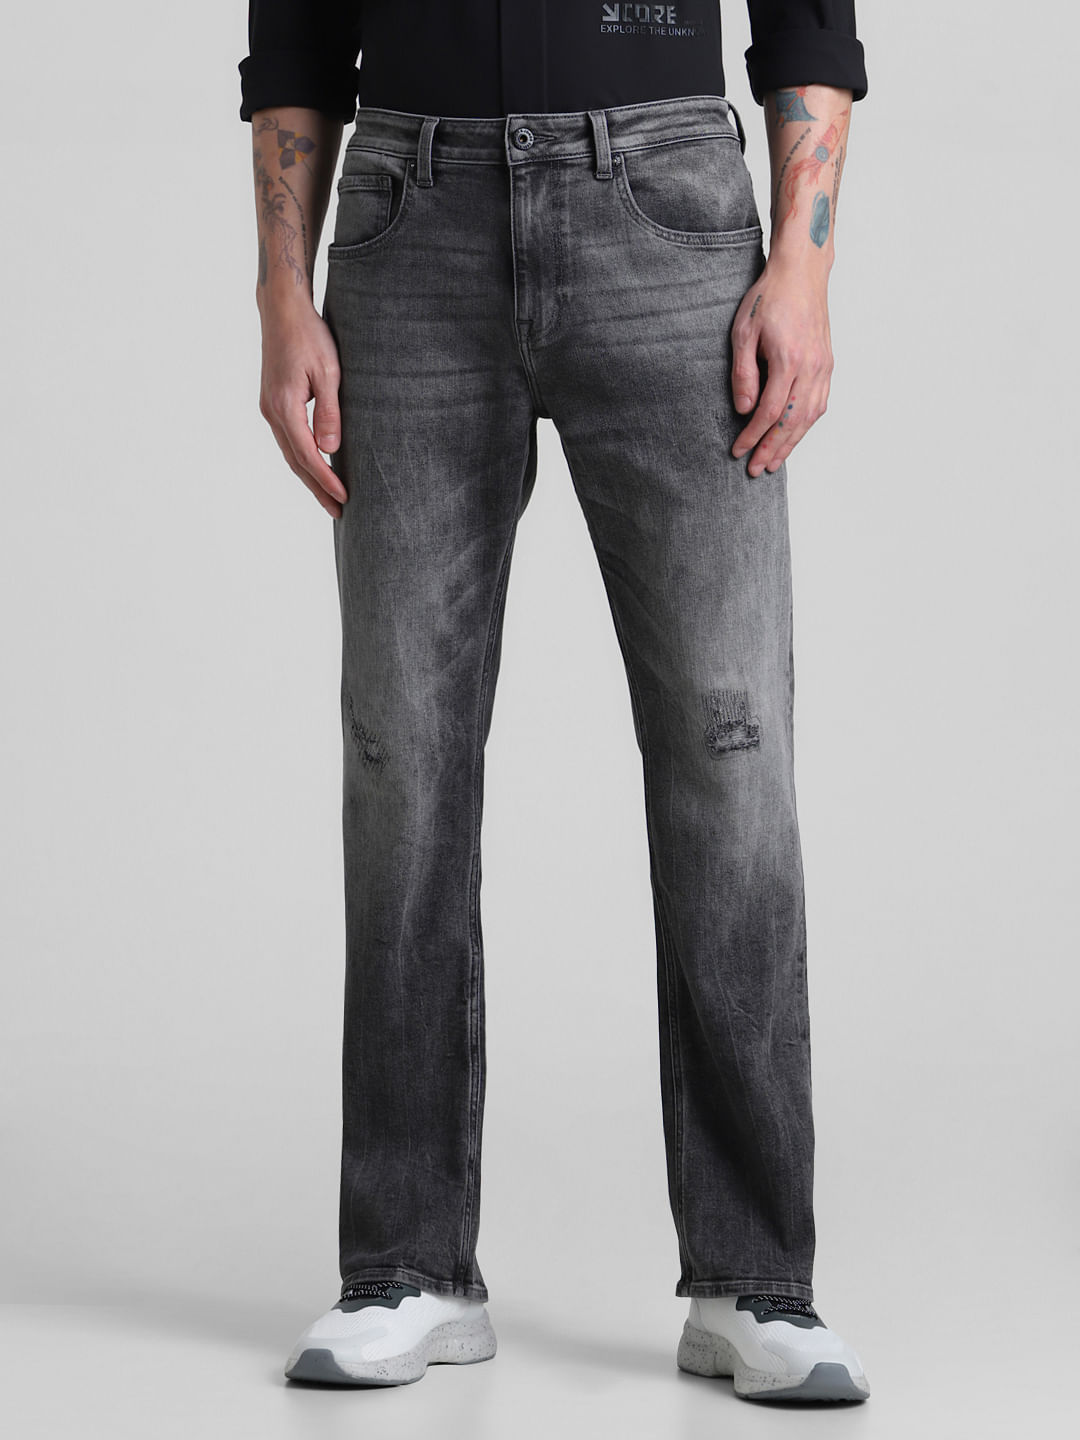 Carbon Black Bootcut Jeans for Men – Mode De Base Italie